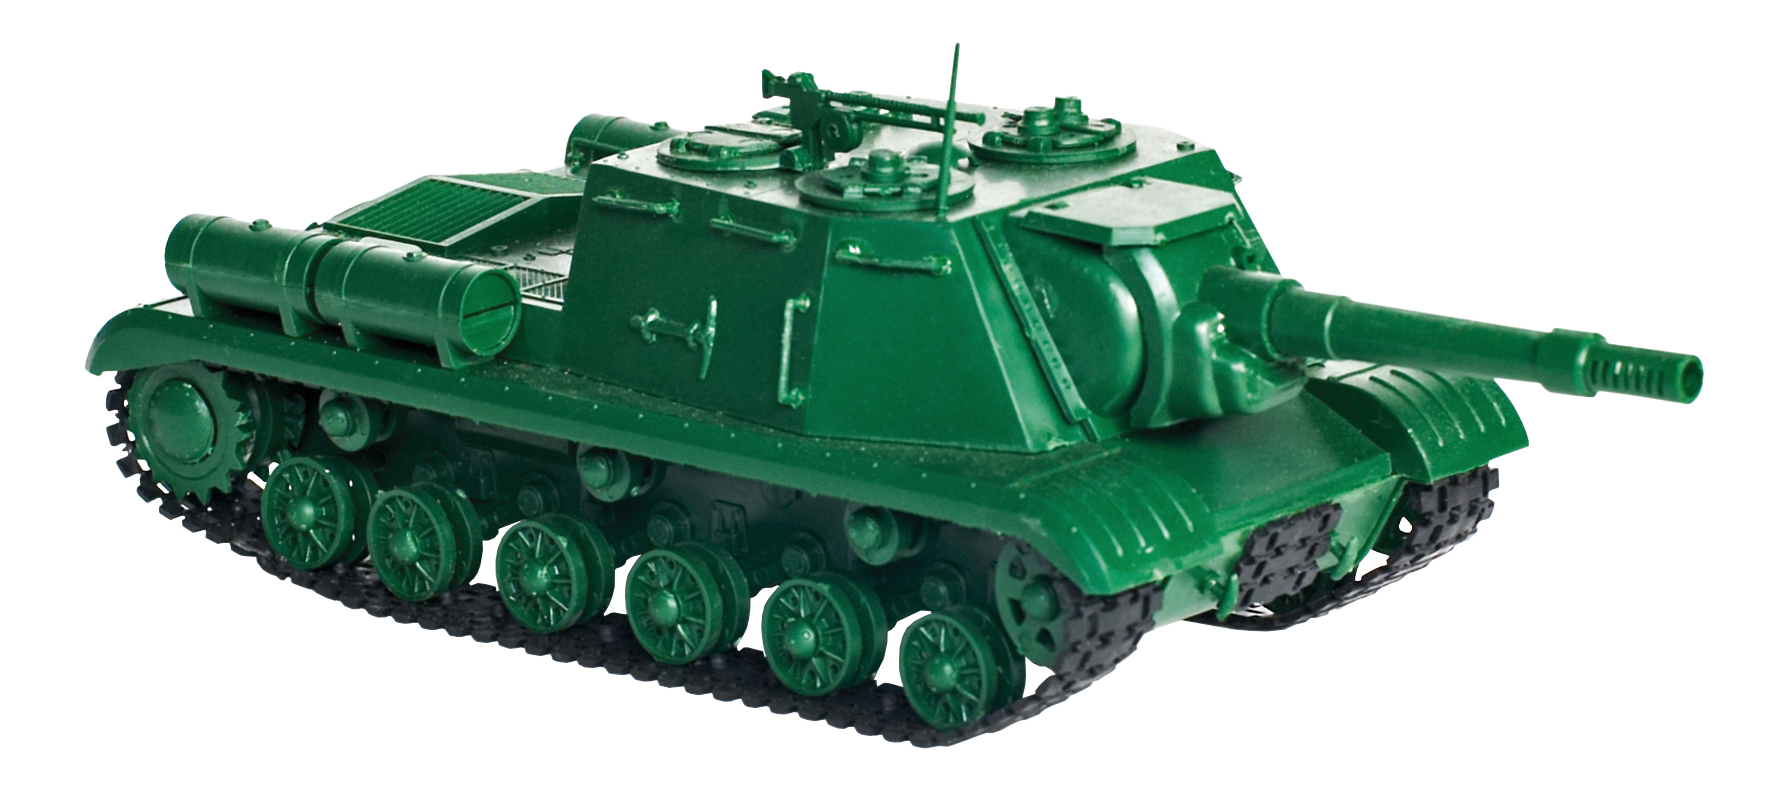 Купить Танк Ису-152, Модели для сборки Огонек Танк Ису-152,